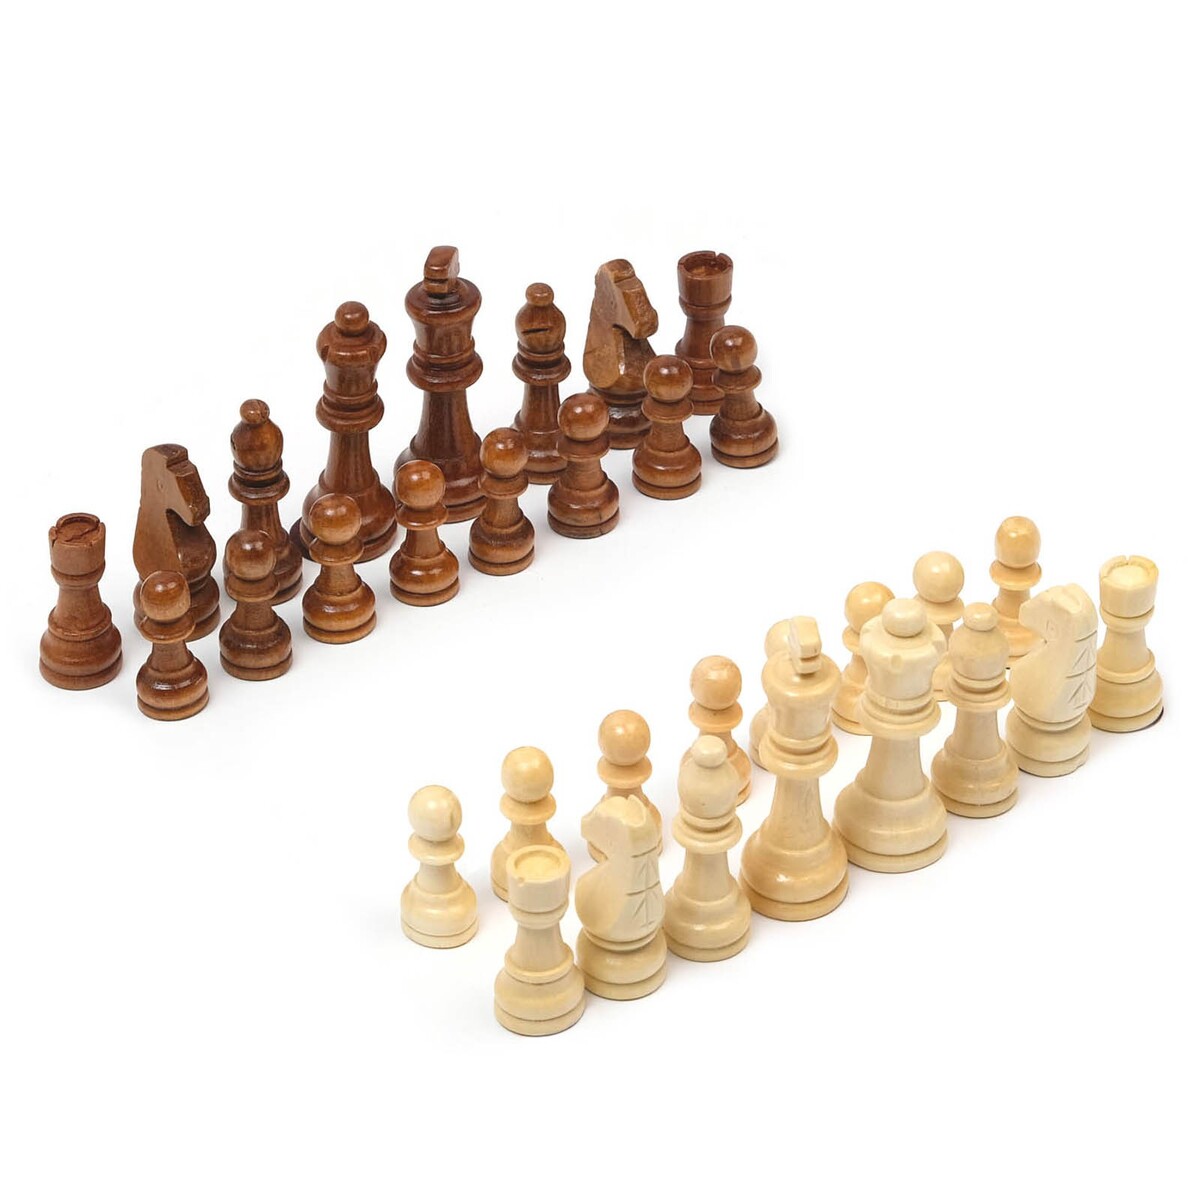 Шахматные фигуры, король h-9 см, пешка h-4 см No brand